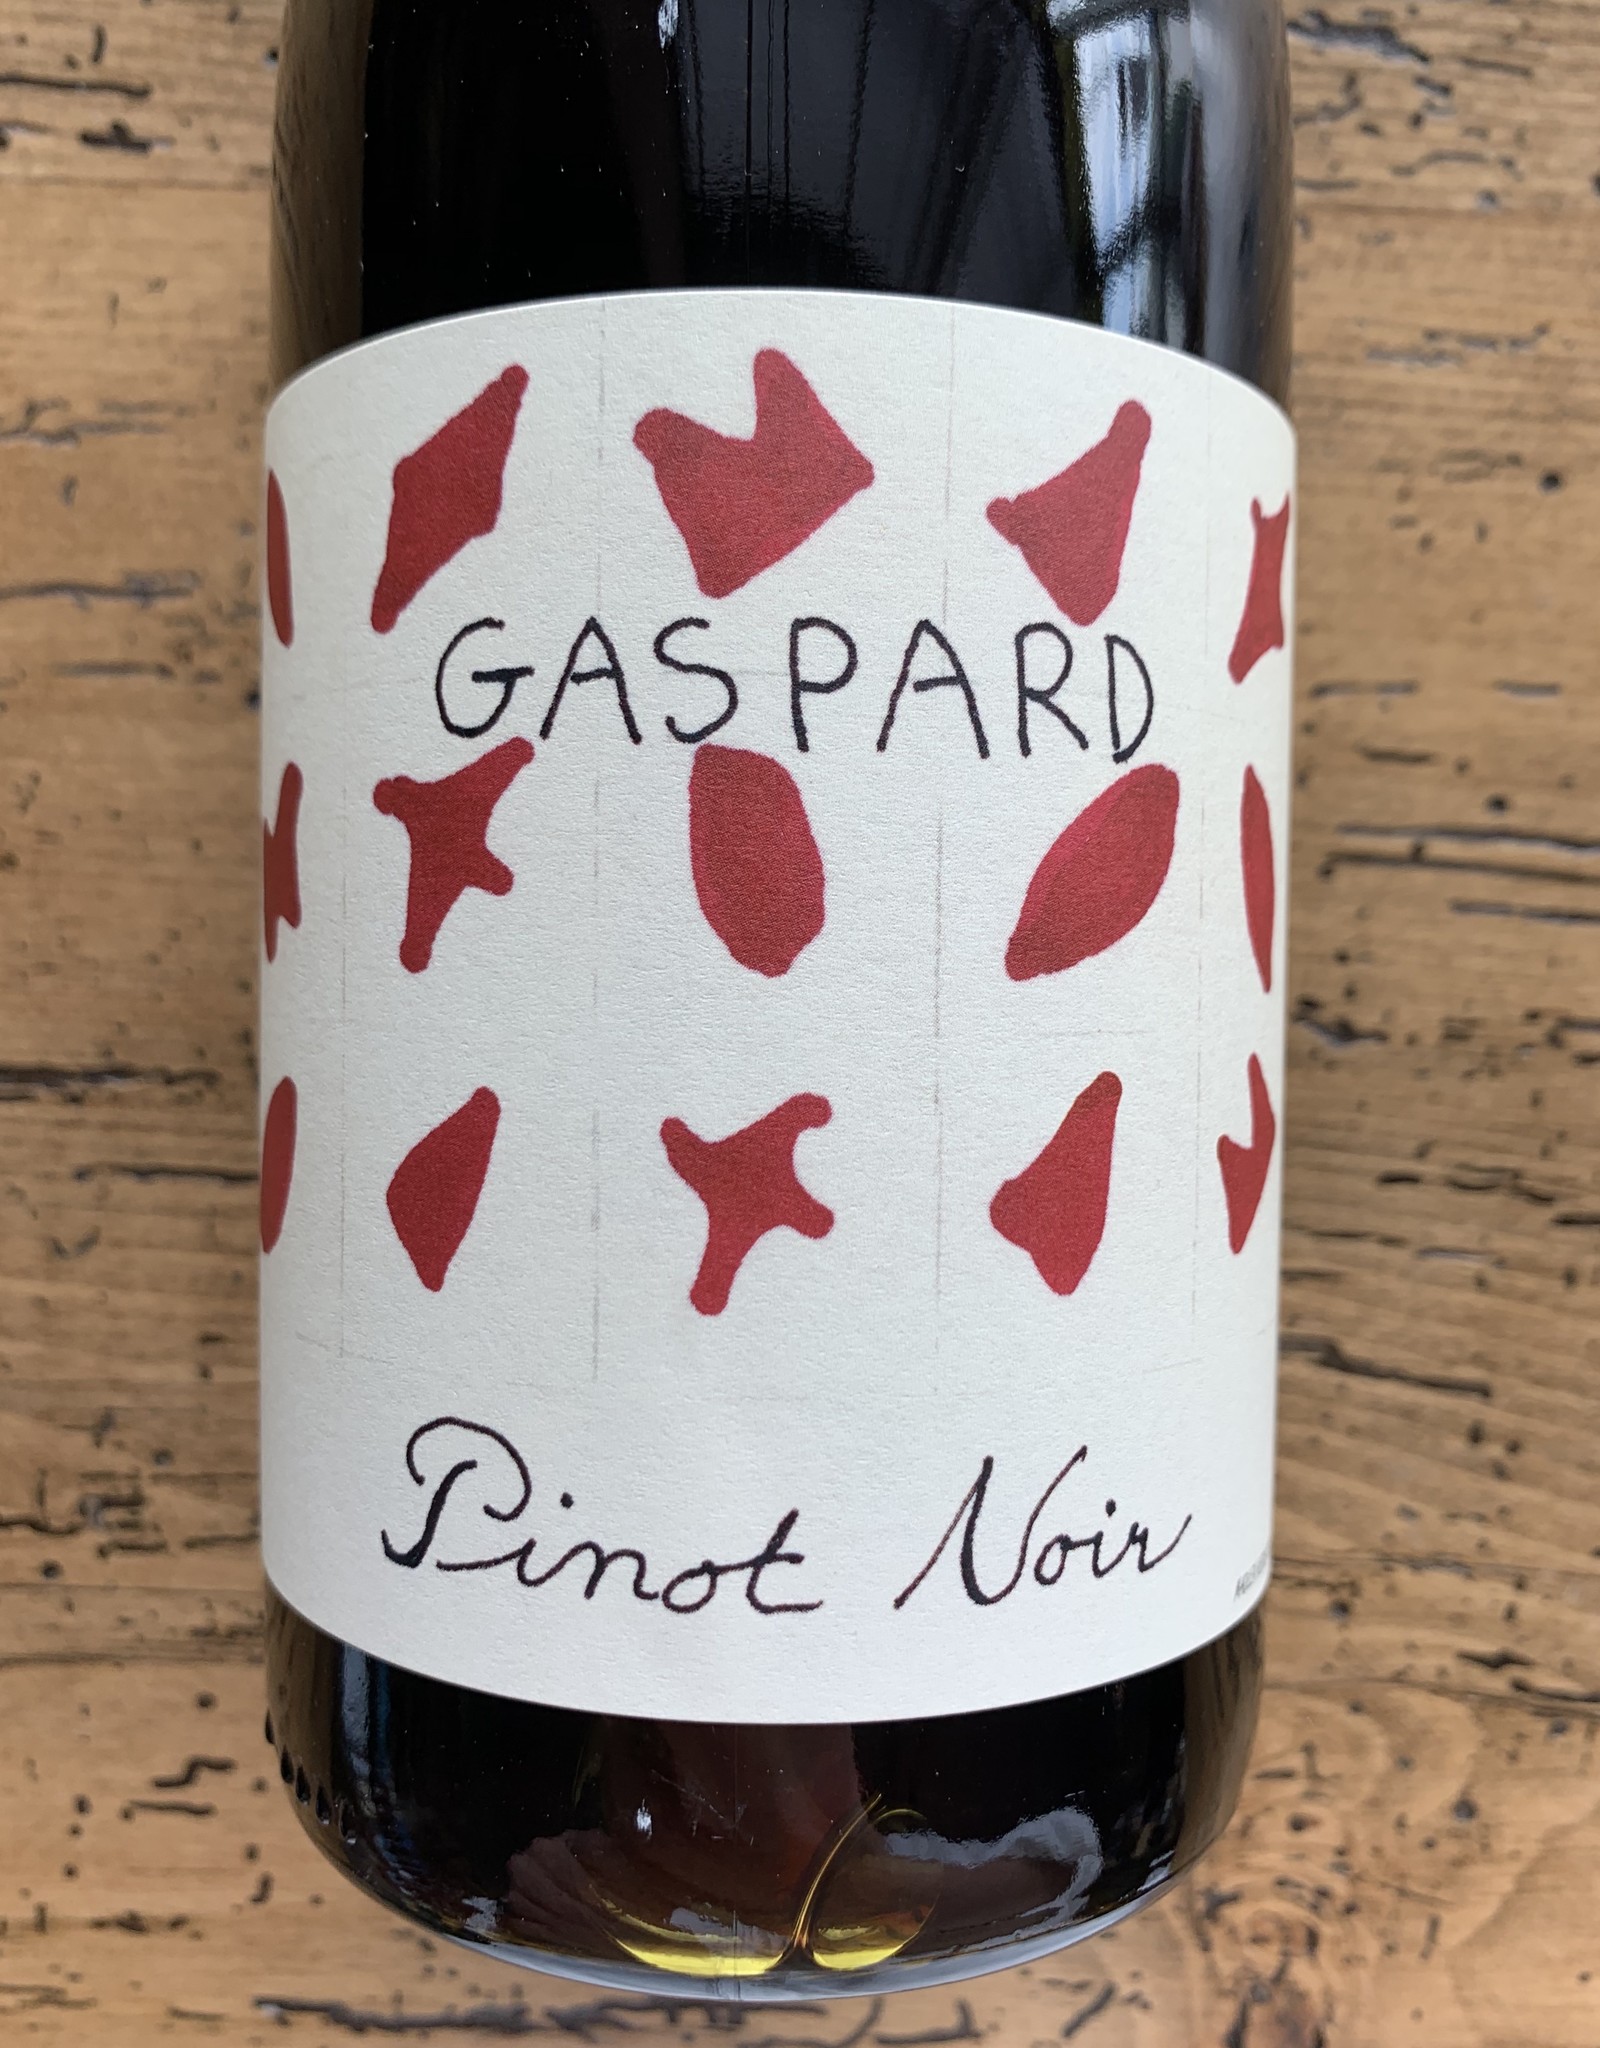 Gaspard Pinot Noir